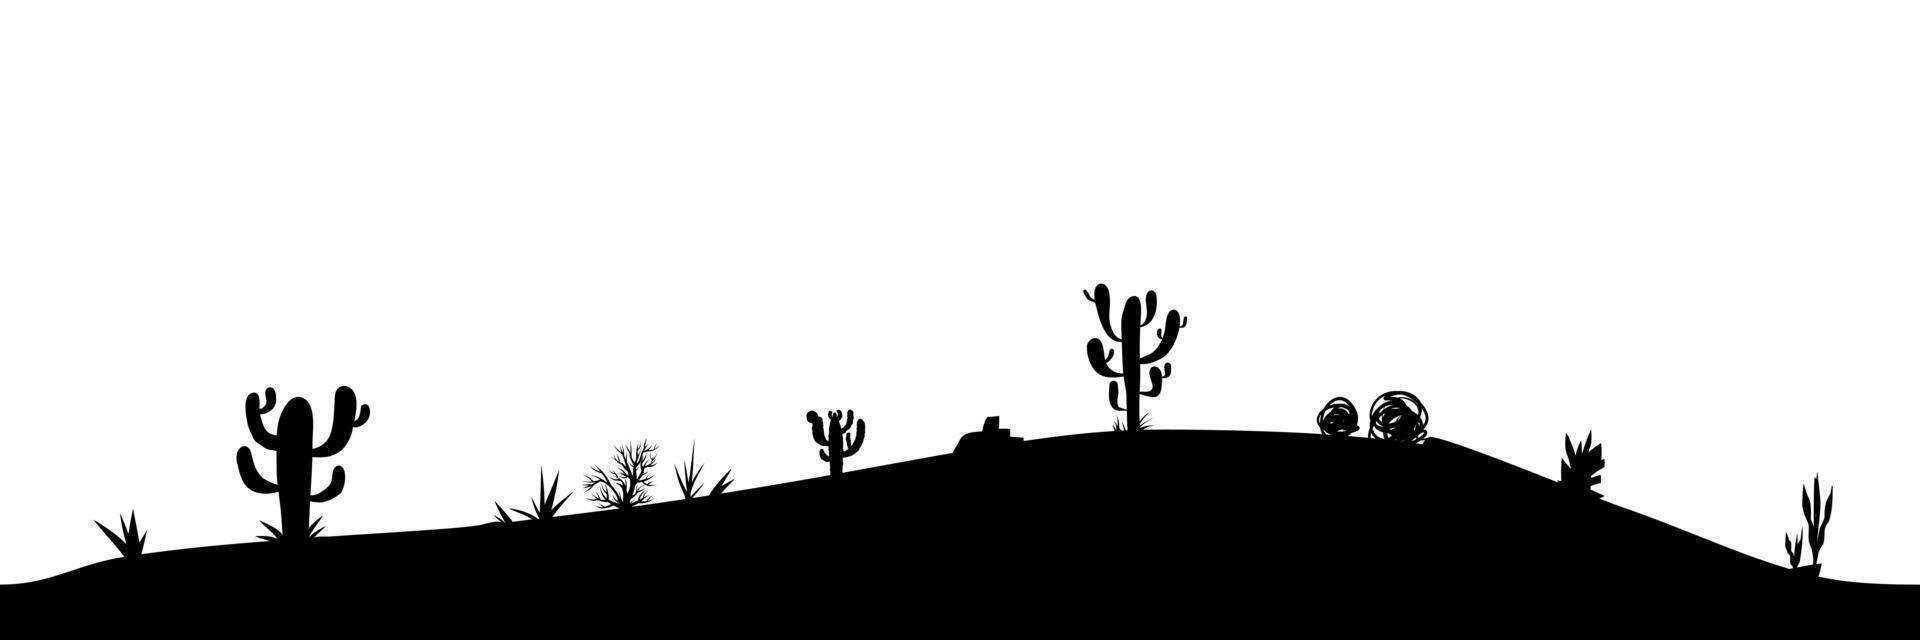 schwarz Silhouette von Wüste Landschaft mit Kakteen und Pflanzen isoliert auf Weiß. Collage Element von Natur, horizontal Hintergrund. Wüste nahtlos Muster. vektor